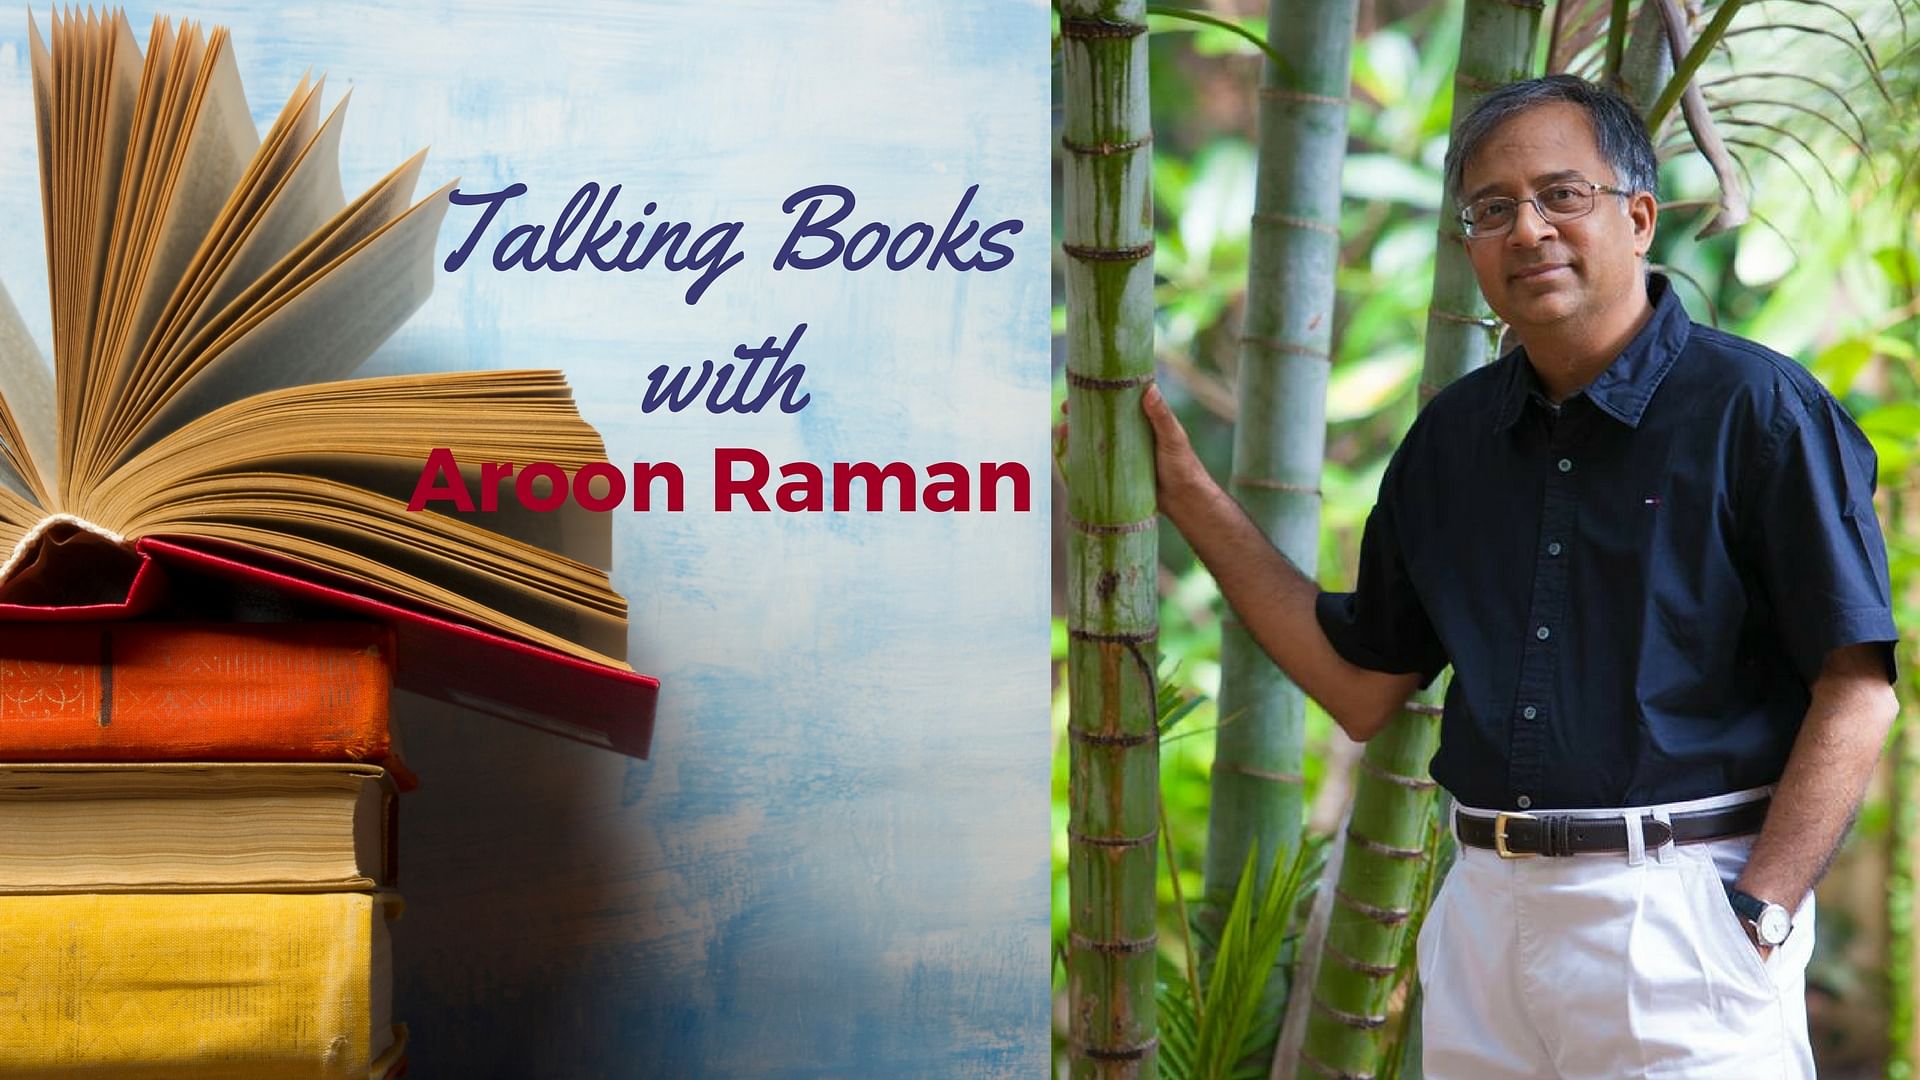 

Author Aroon Raman